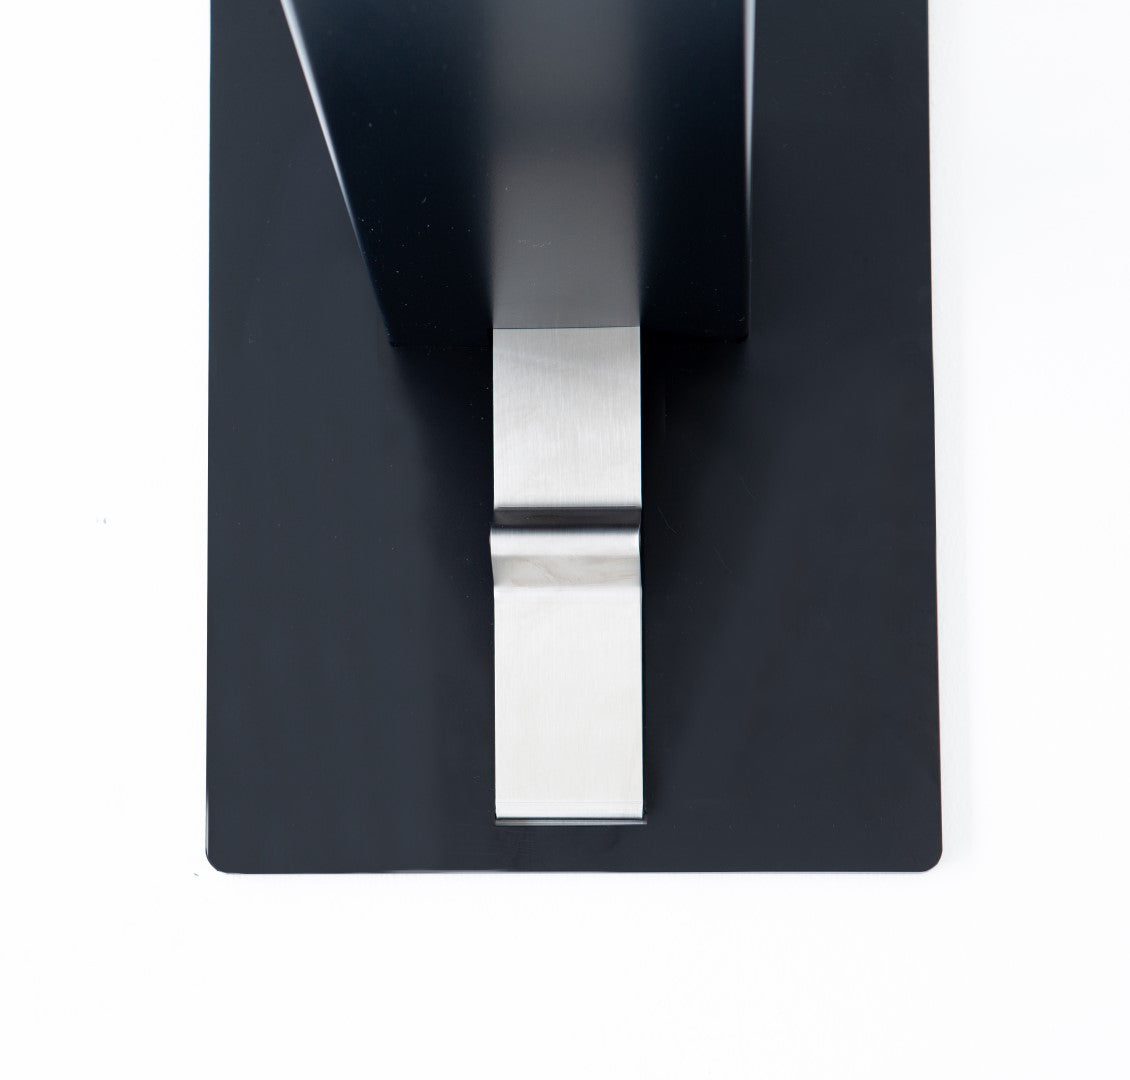 Pedal Hand Sanitizer Dispenser